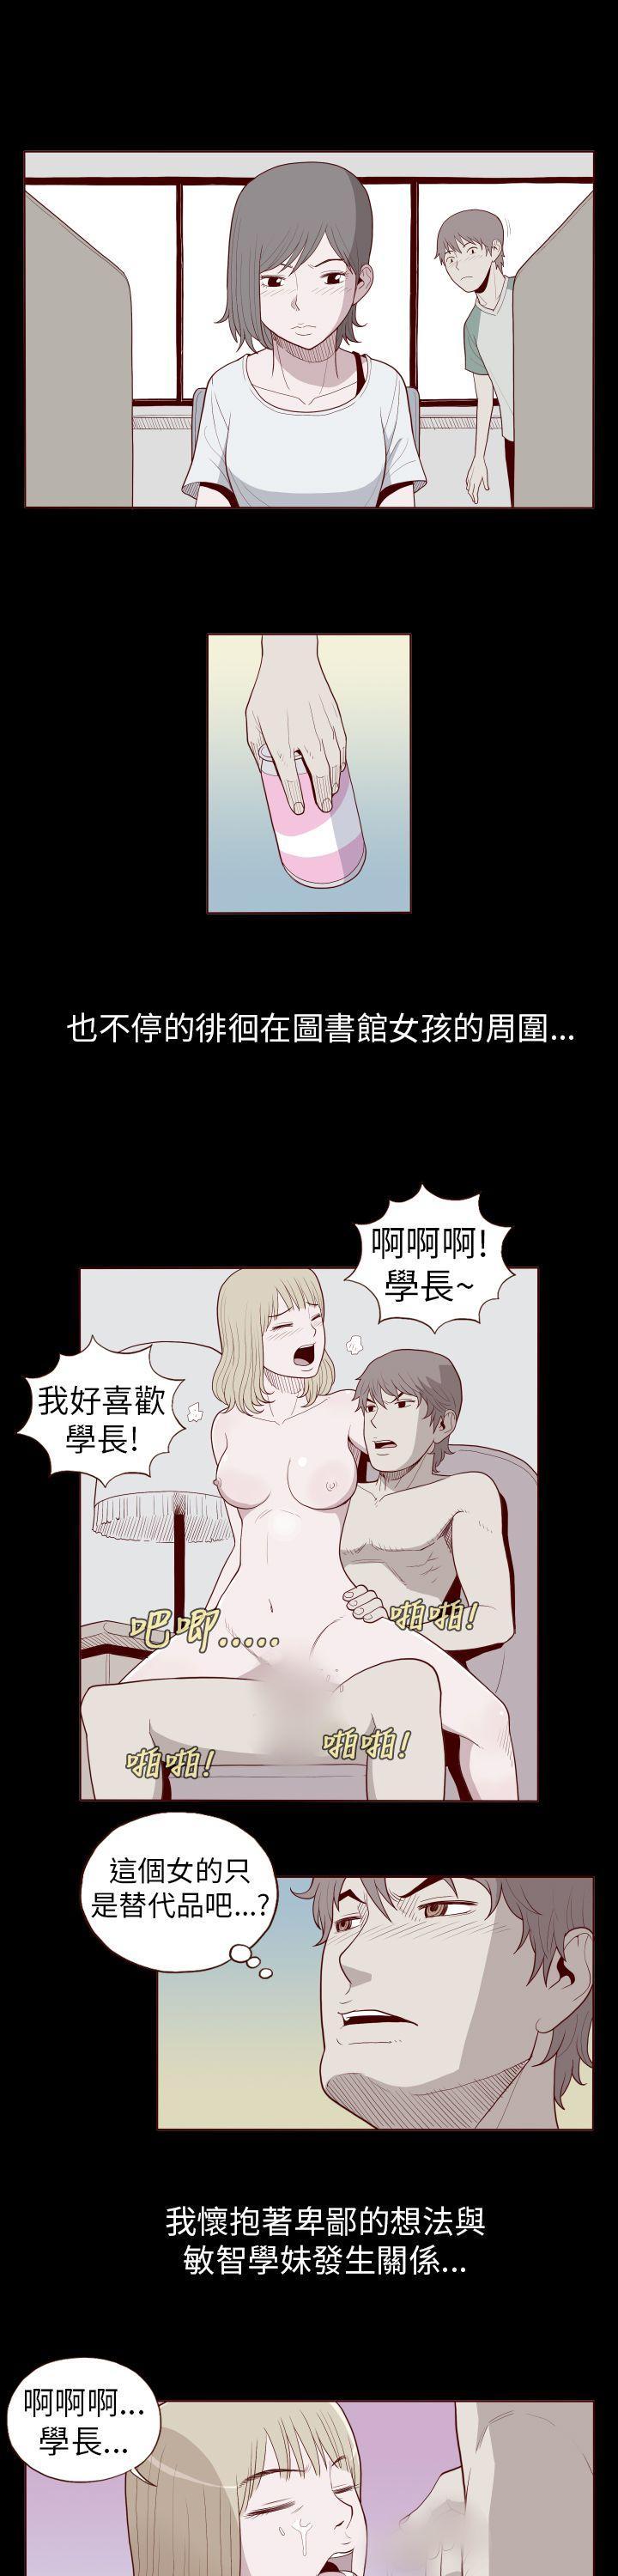 Caseiro 淫亂魔鬼 Interracial Sex - Page 5